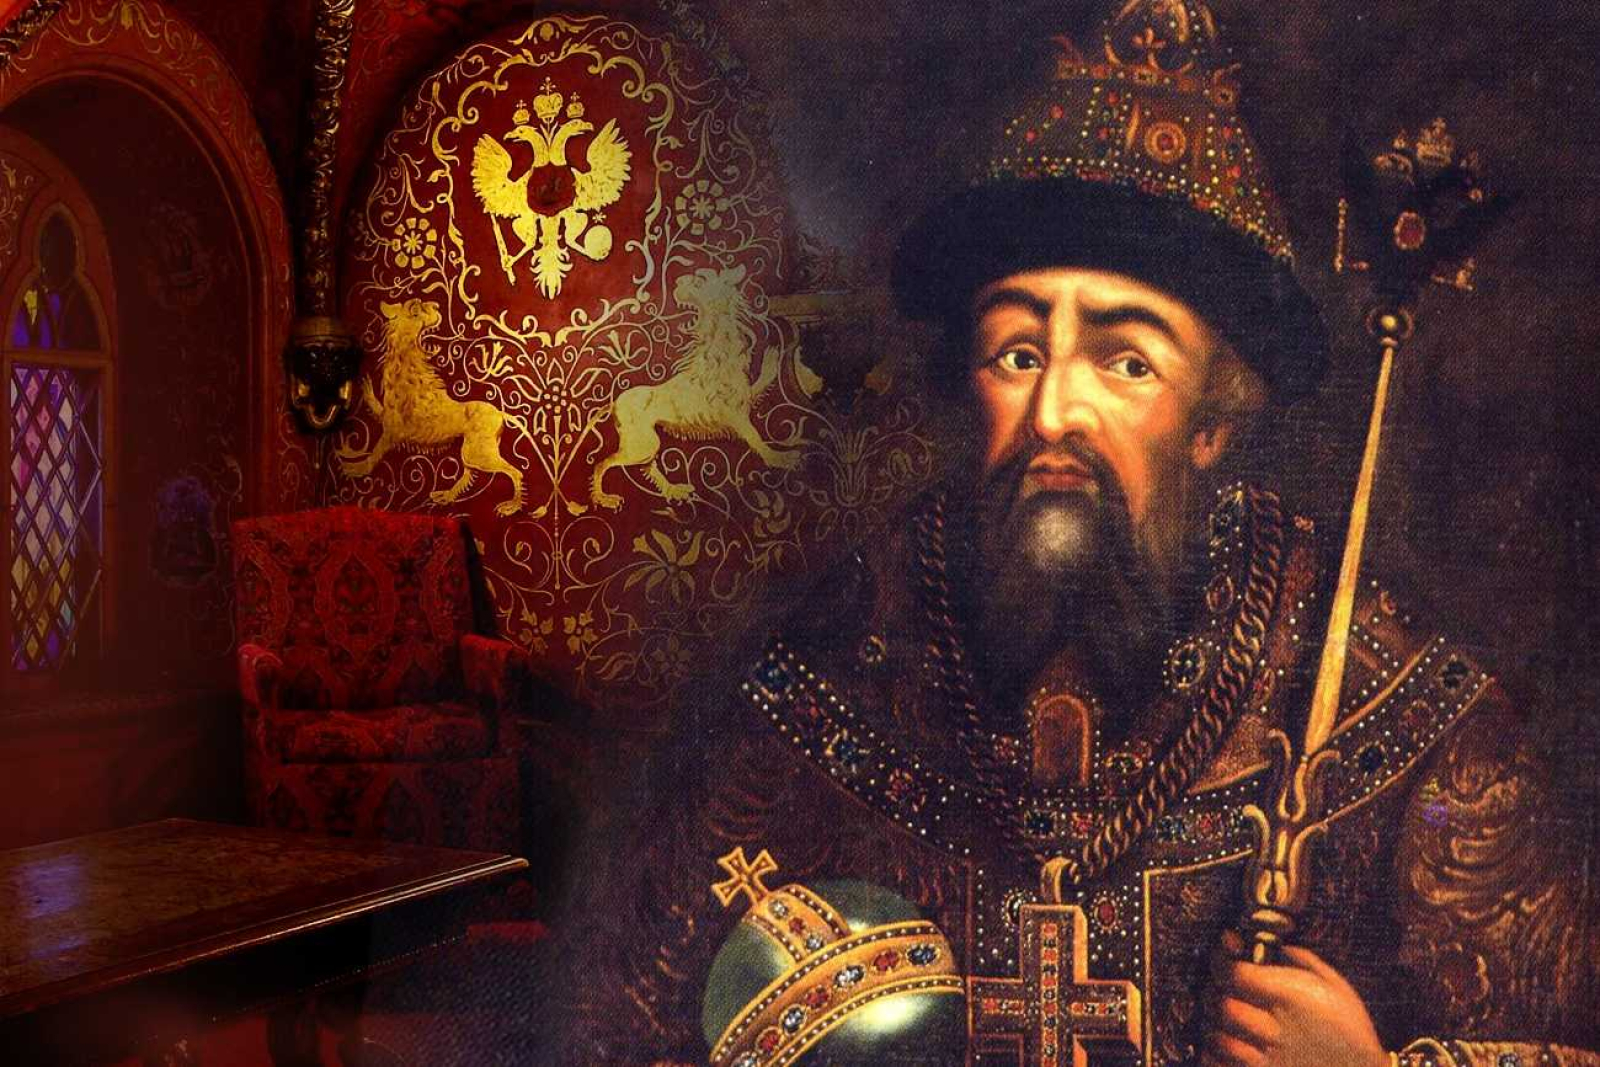 Иван IV Грозный 1533-1584